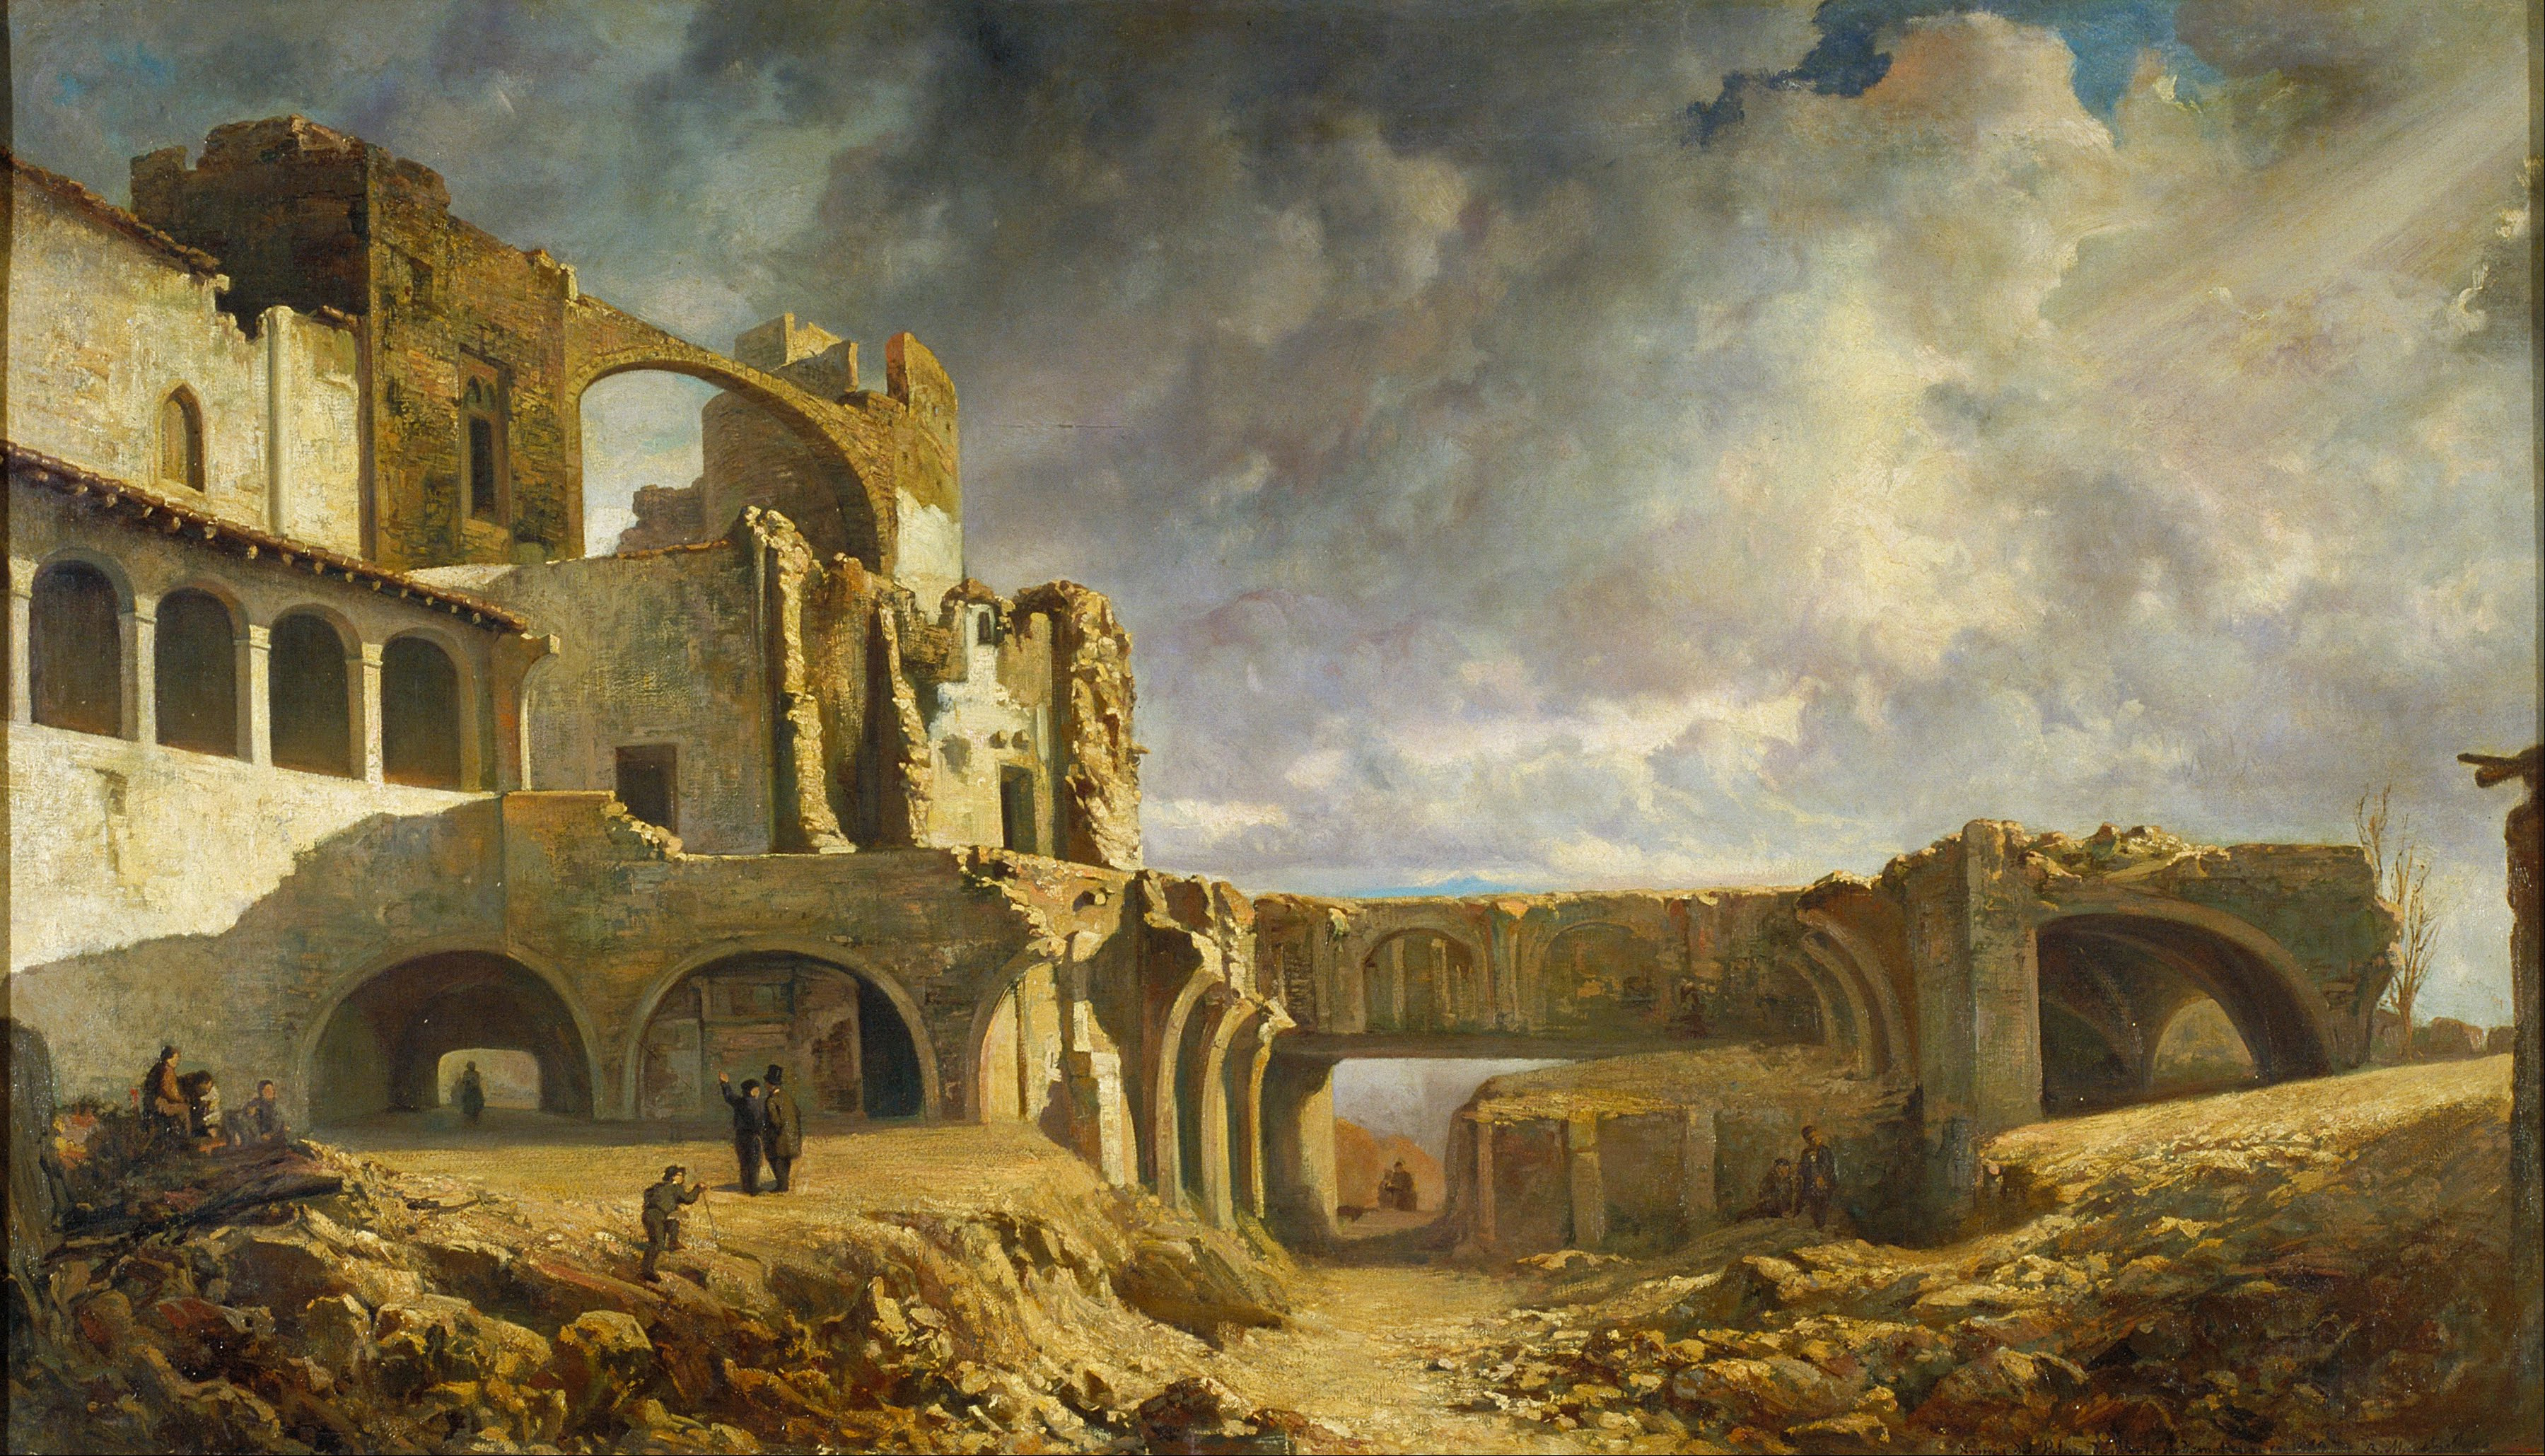 Ramon Martí i Alsina - Ruins of the Palace - Google Art Project